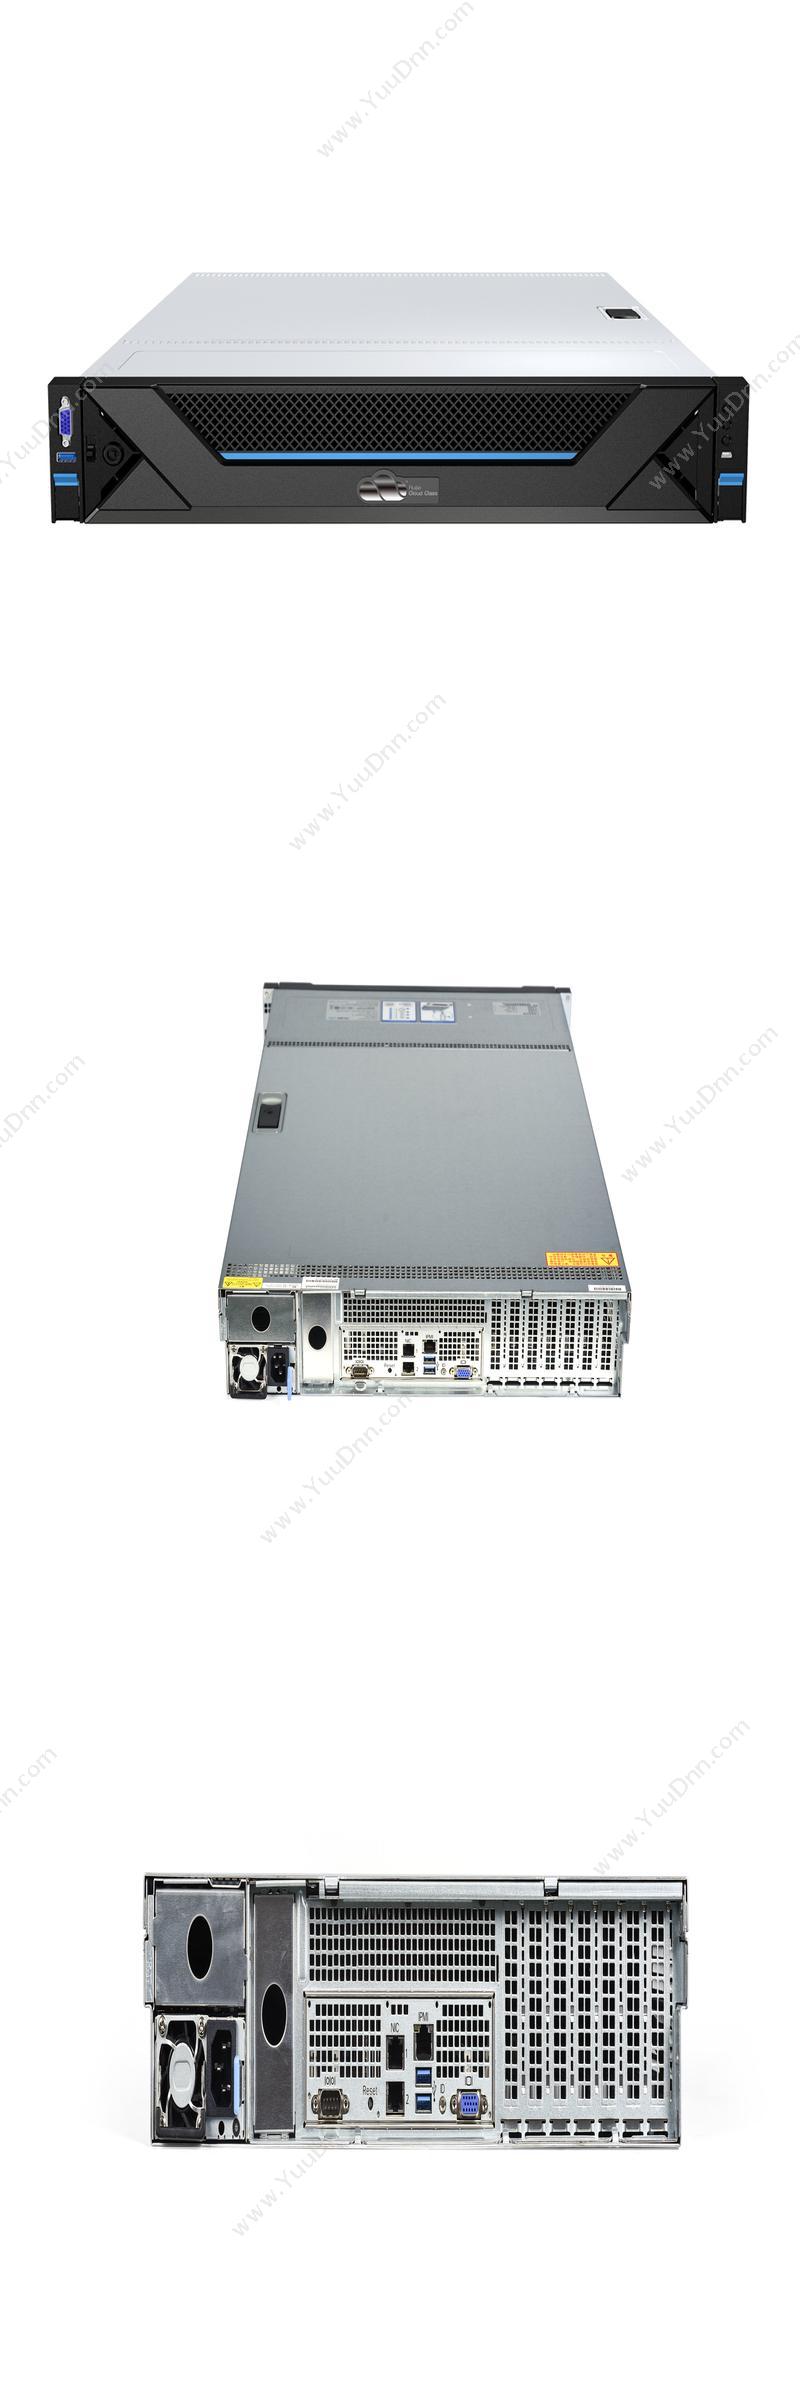 锐捷 RG-RCD6000 V4 服务器 机架式服务器